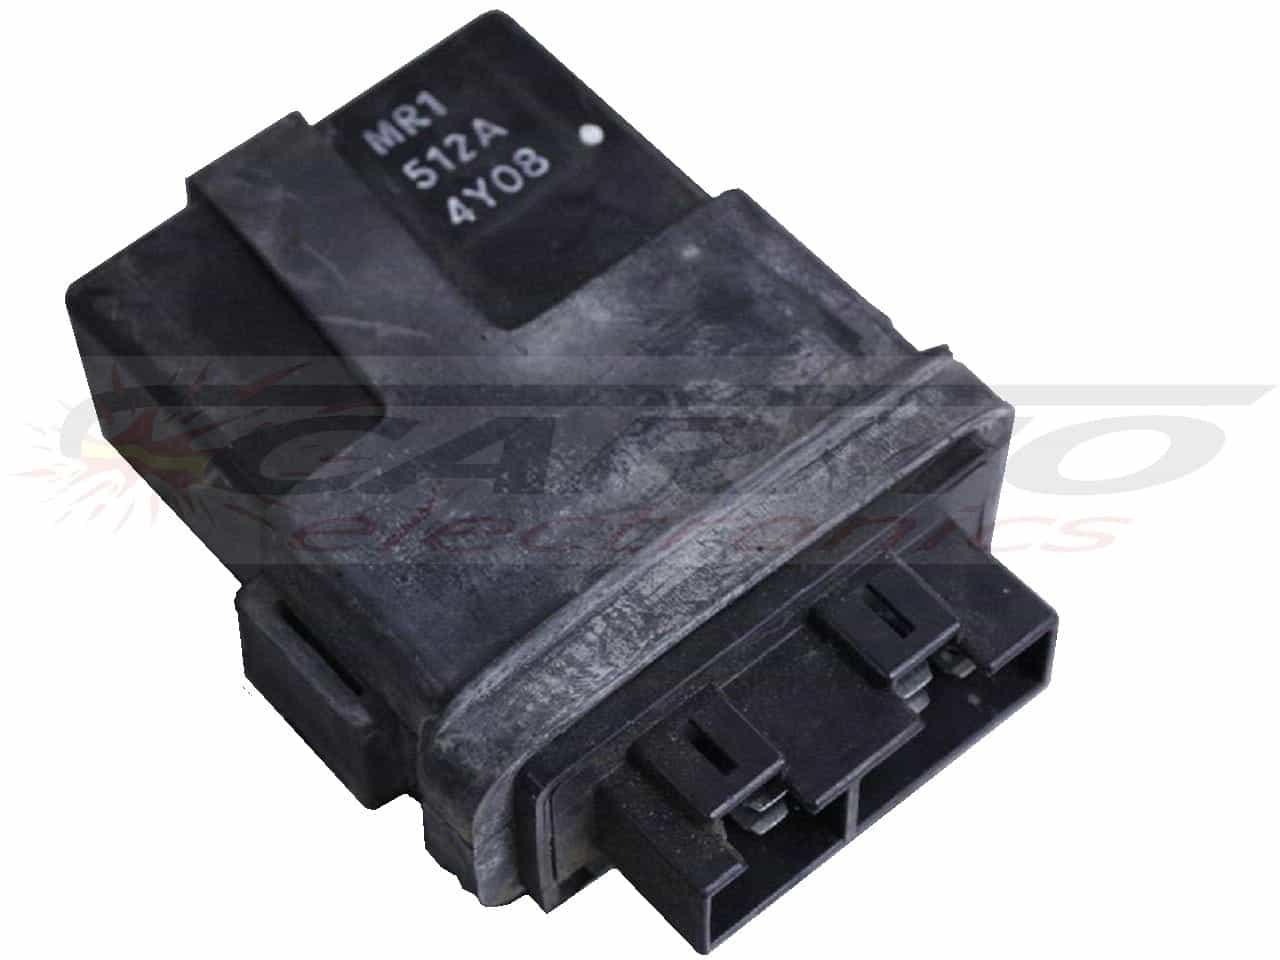 VLX600 TCI CDI dispositif de commande boîte noire (MR1, 512A)